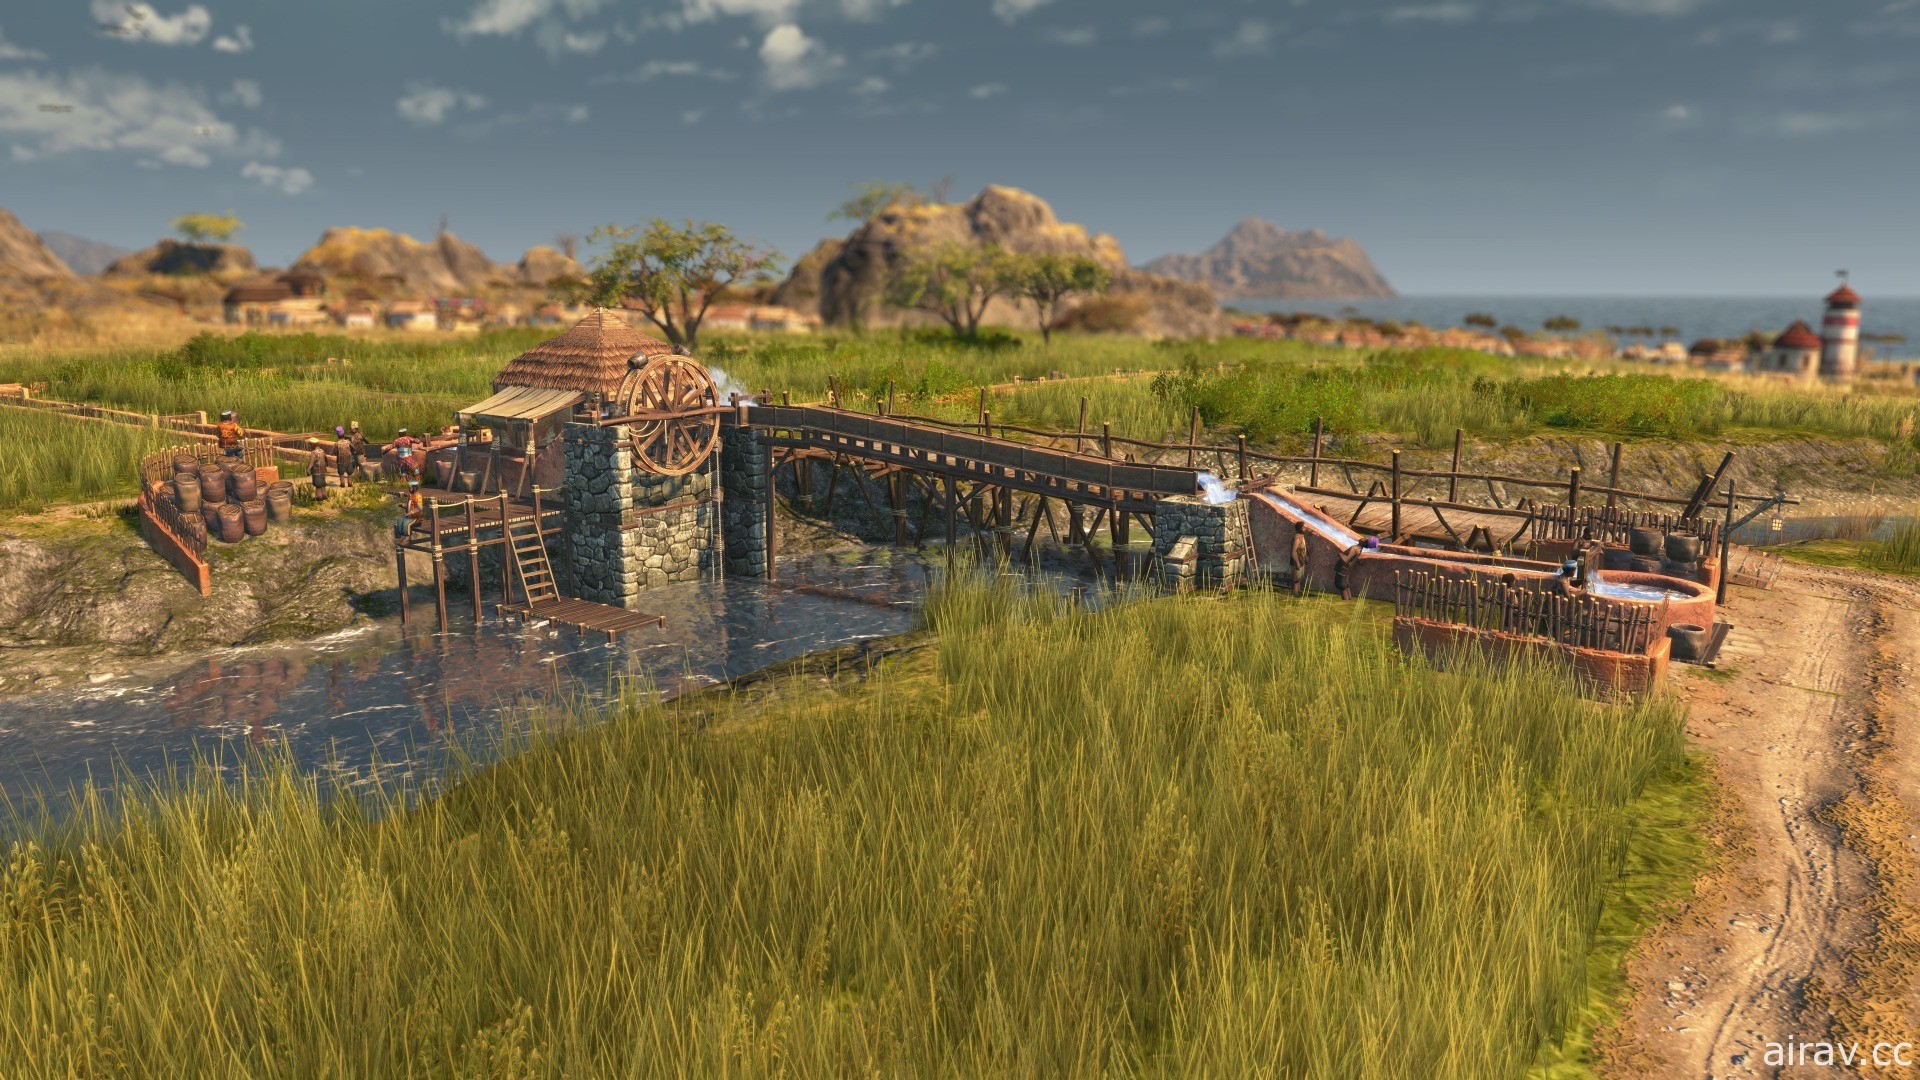 《美丽新世界 1800》新 DLC“狮子大地”已推出 前进新地区“安贝沙”体验灌溉系统等